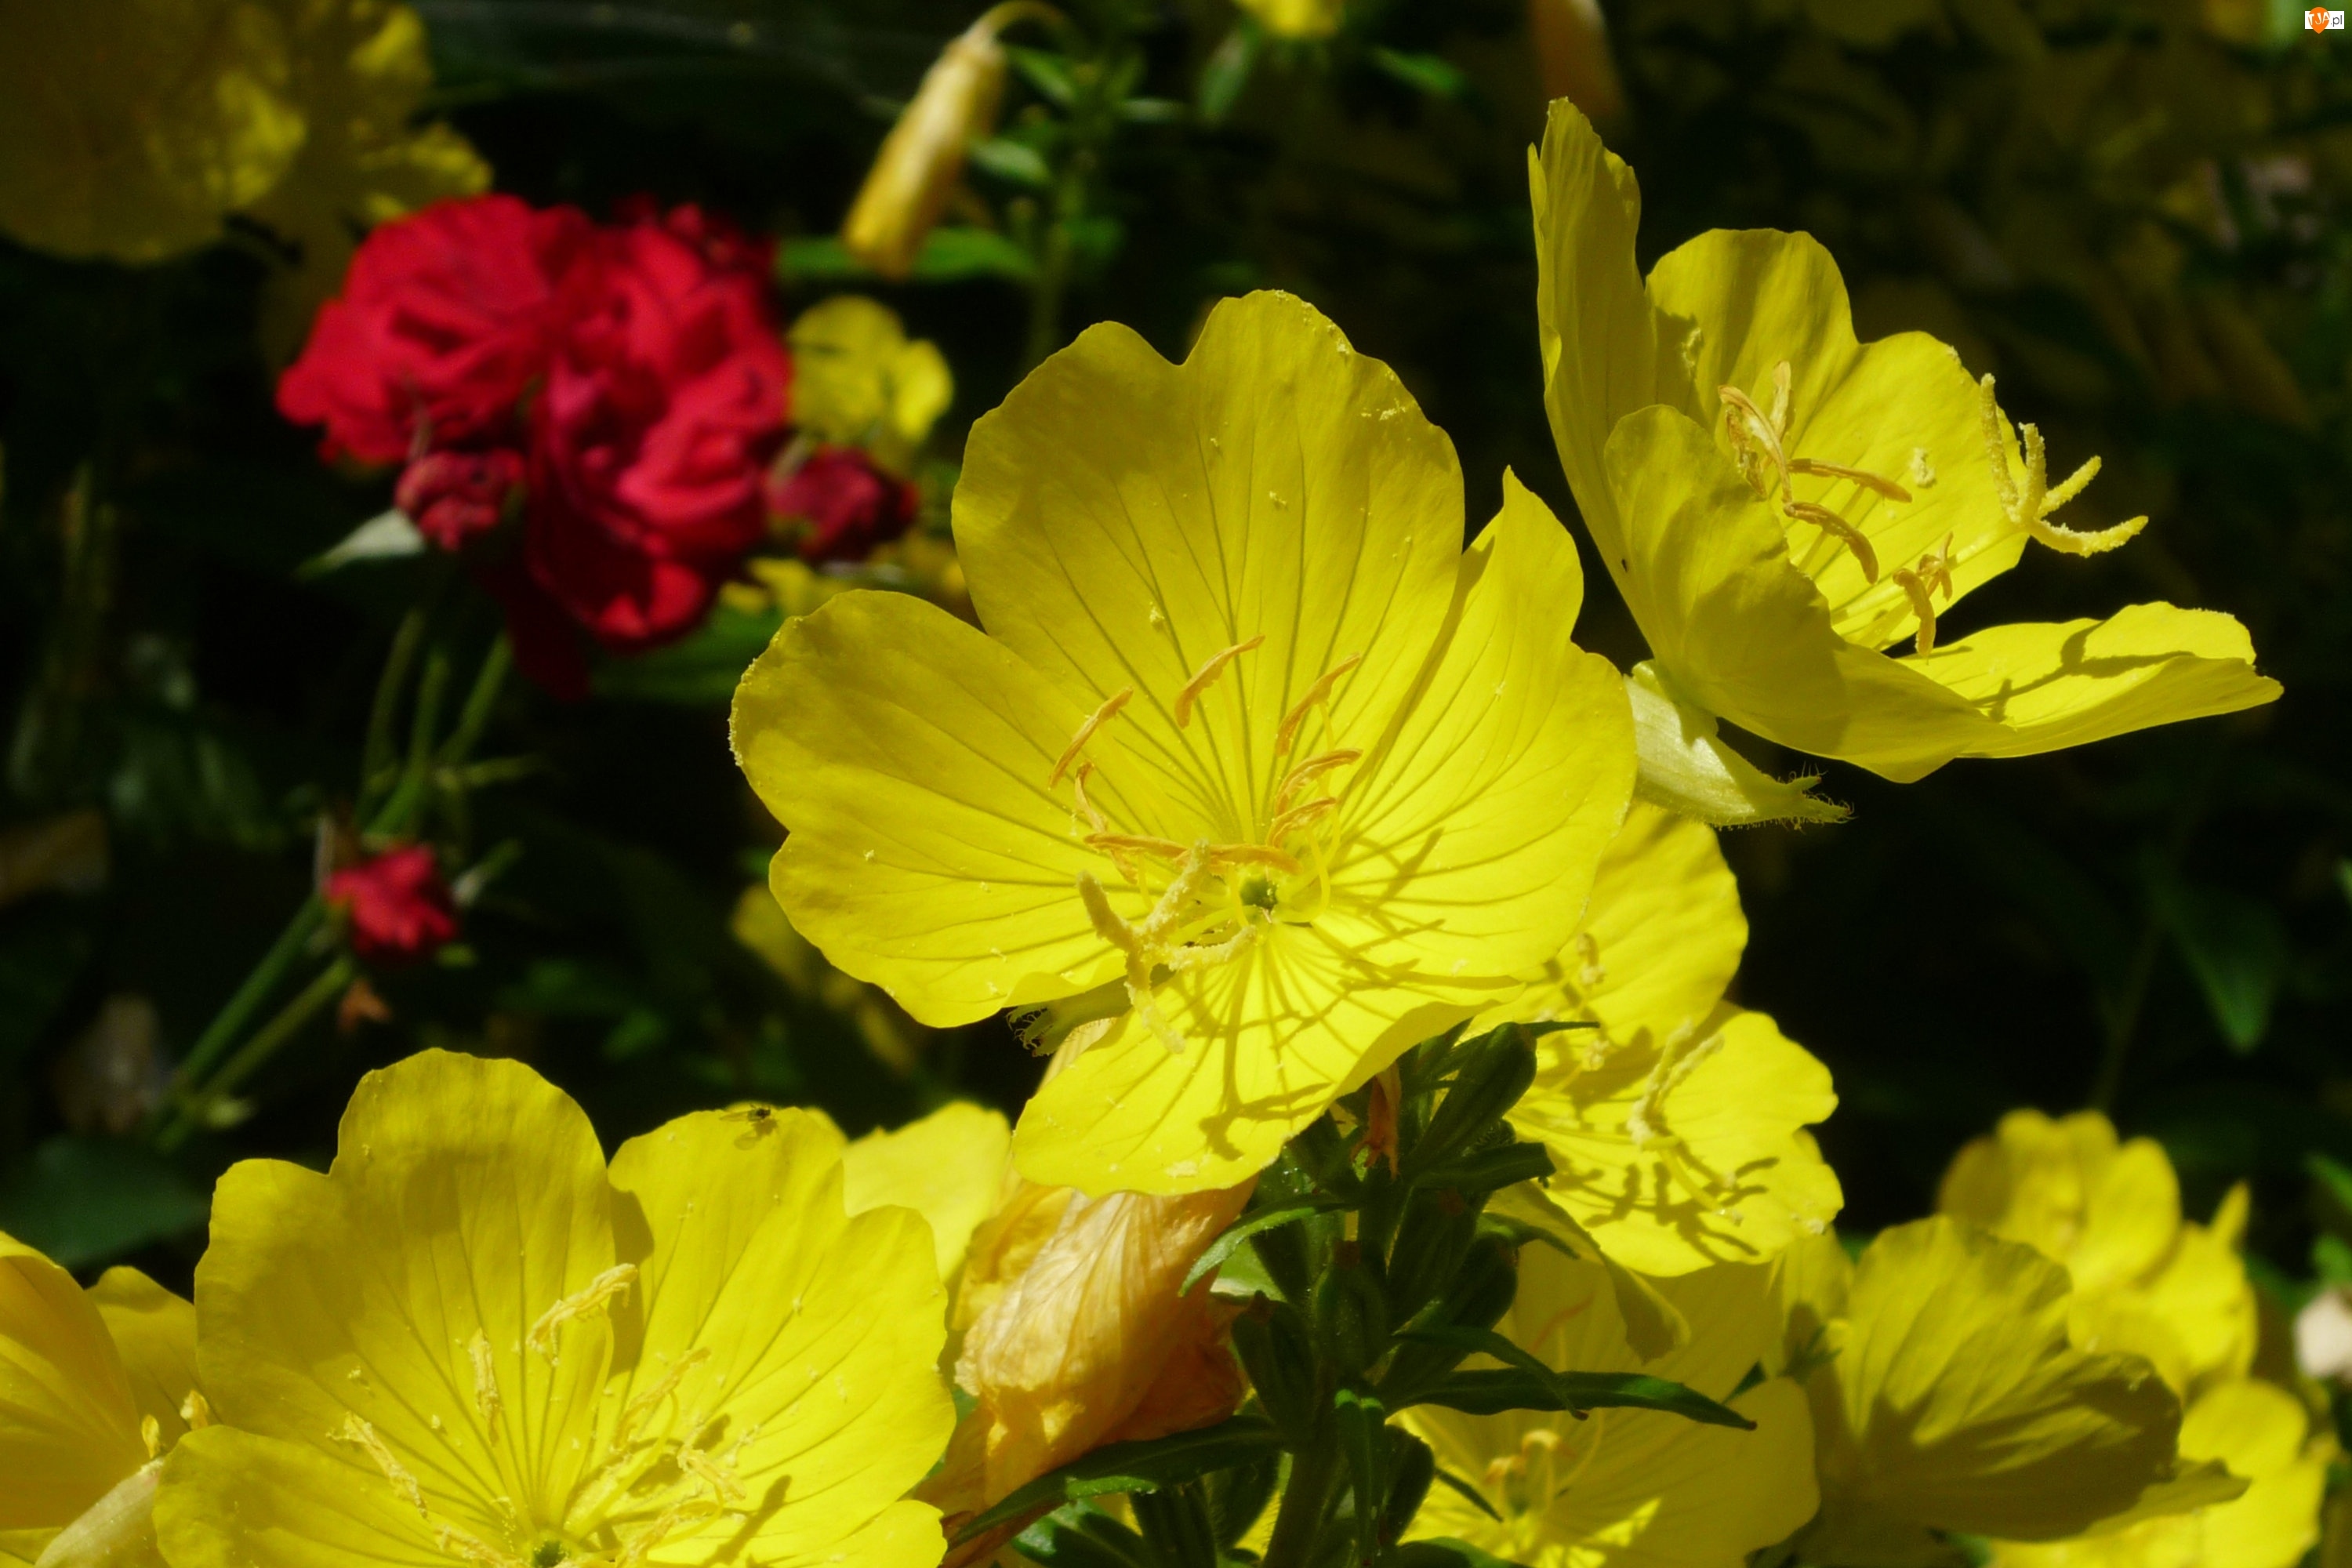 Kwiaty, Żółte